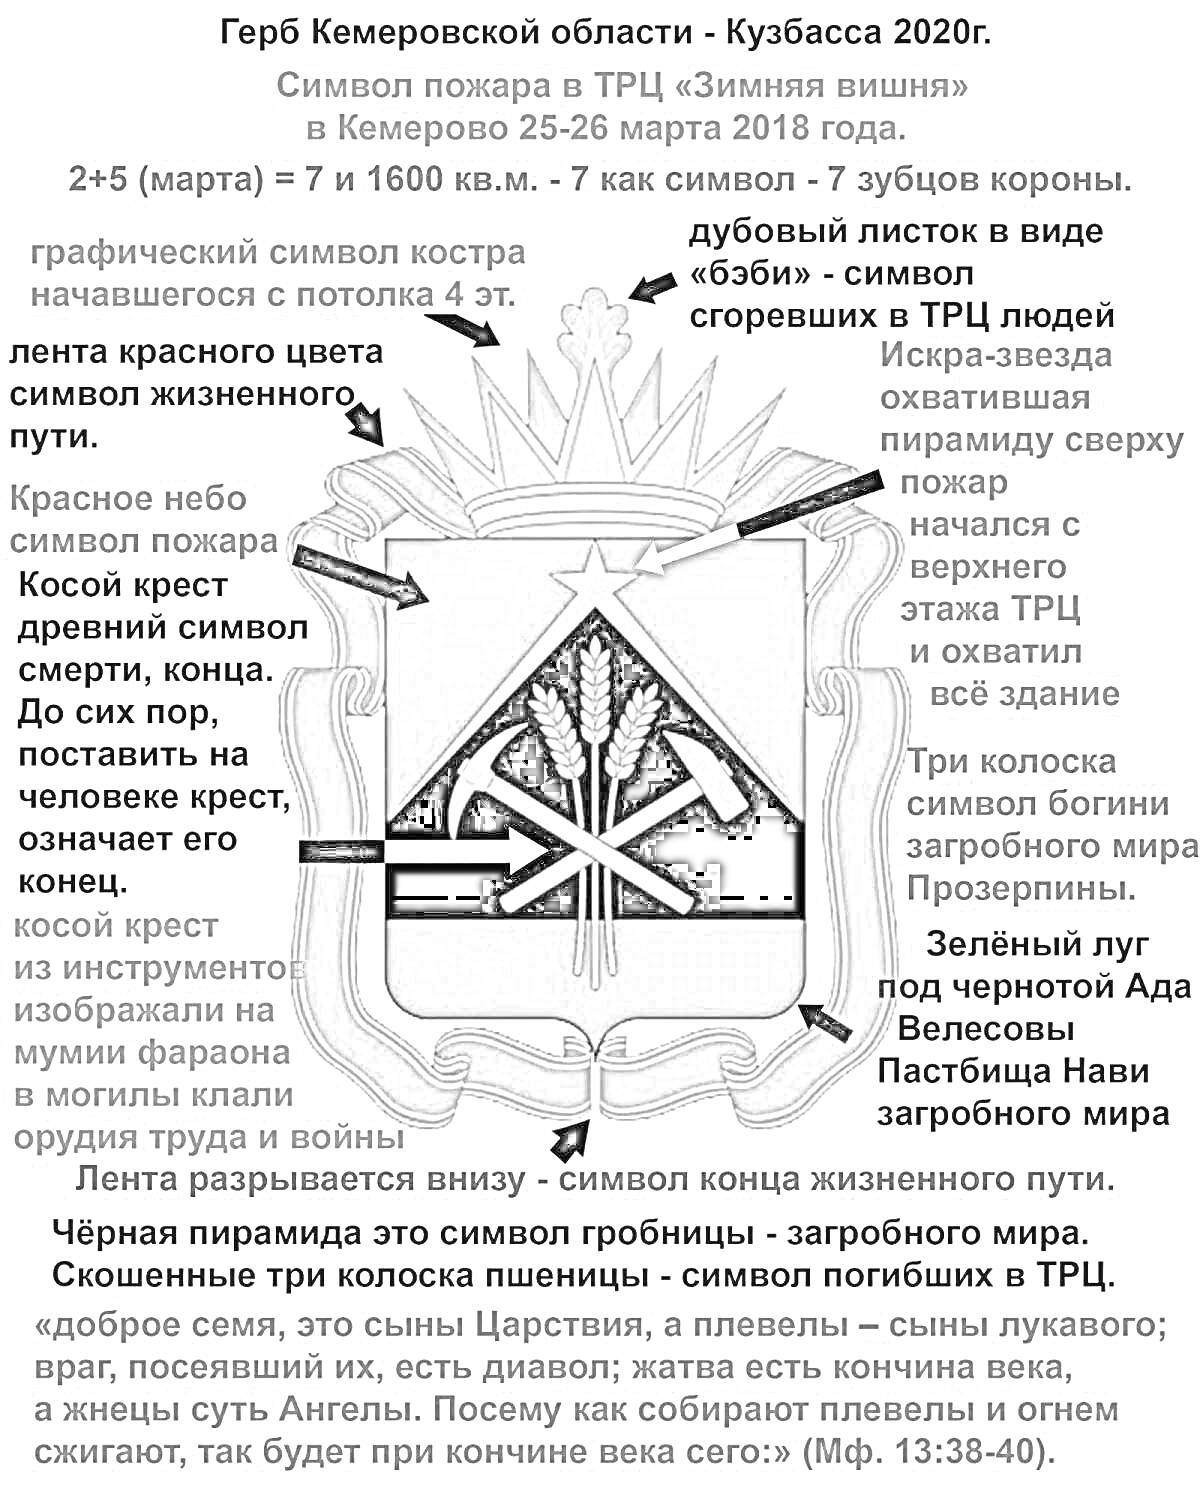 Герб Кемеровской области - Кузбасса 2020 год. Символ пожара в ТРЦ 